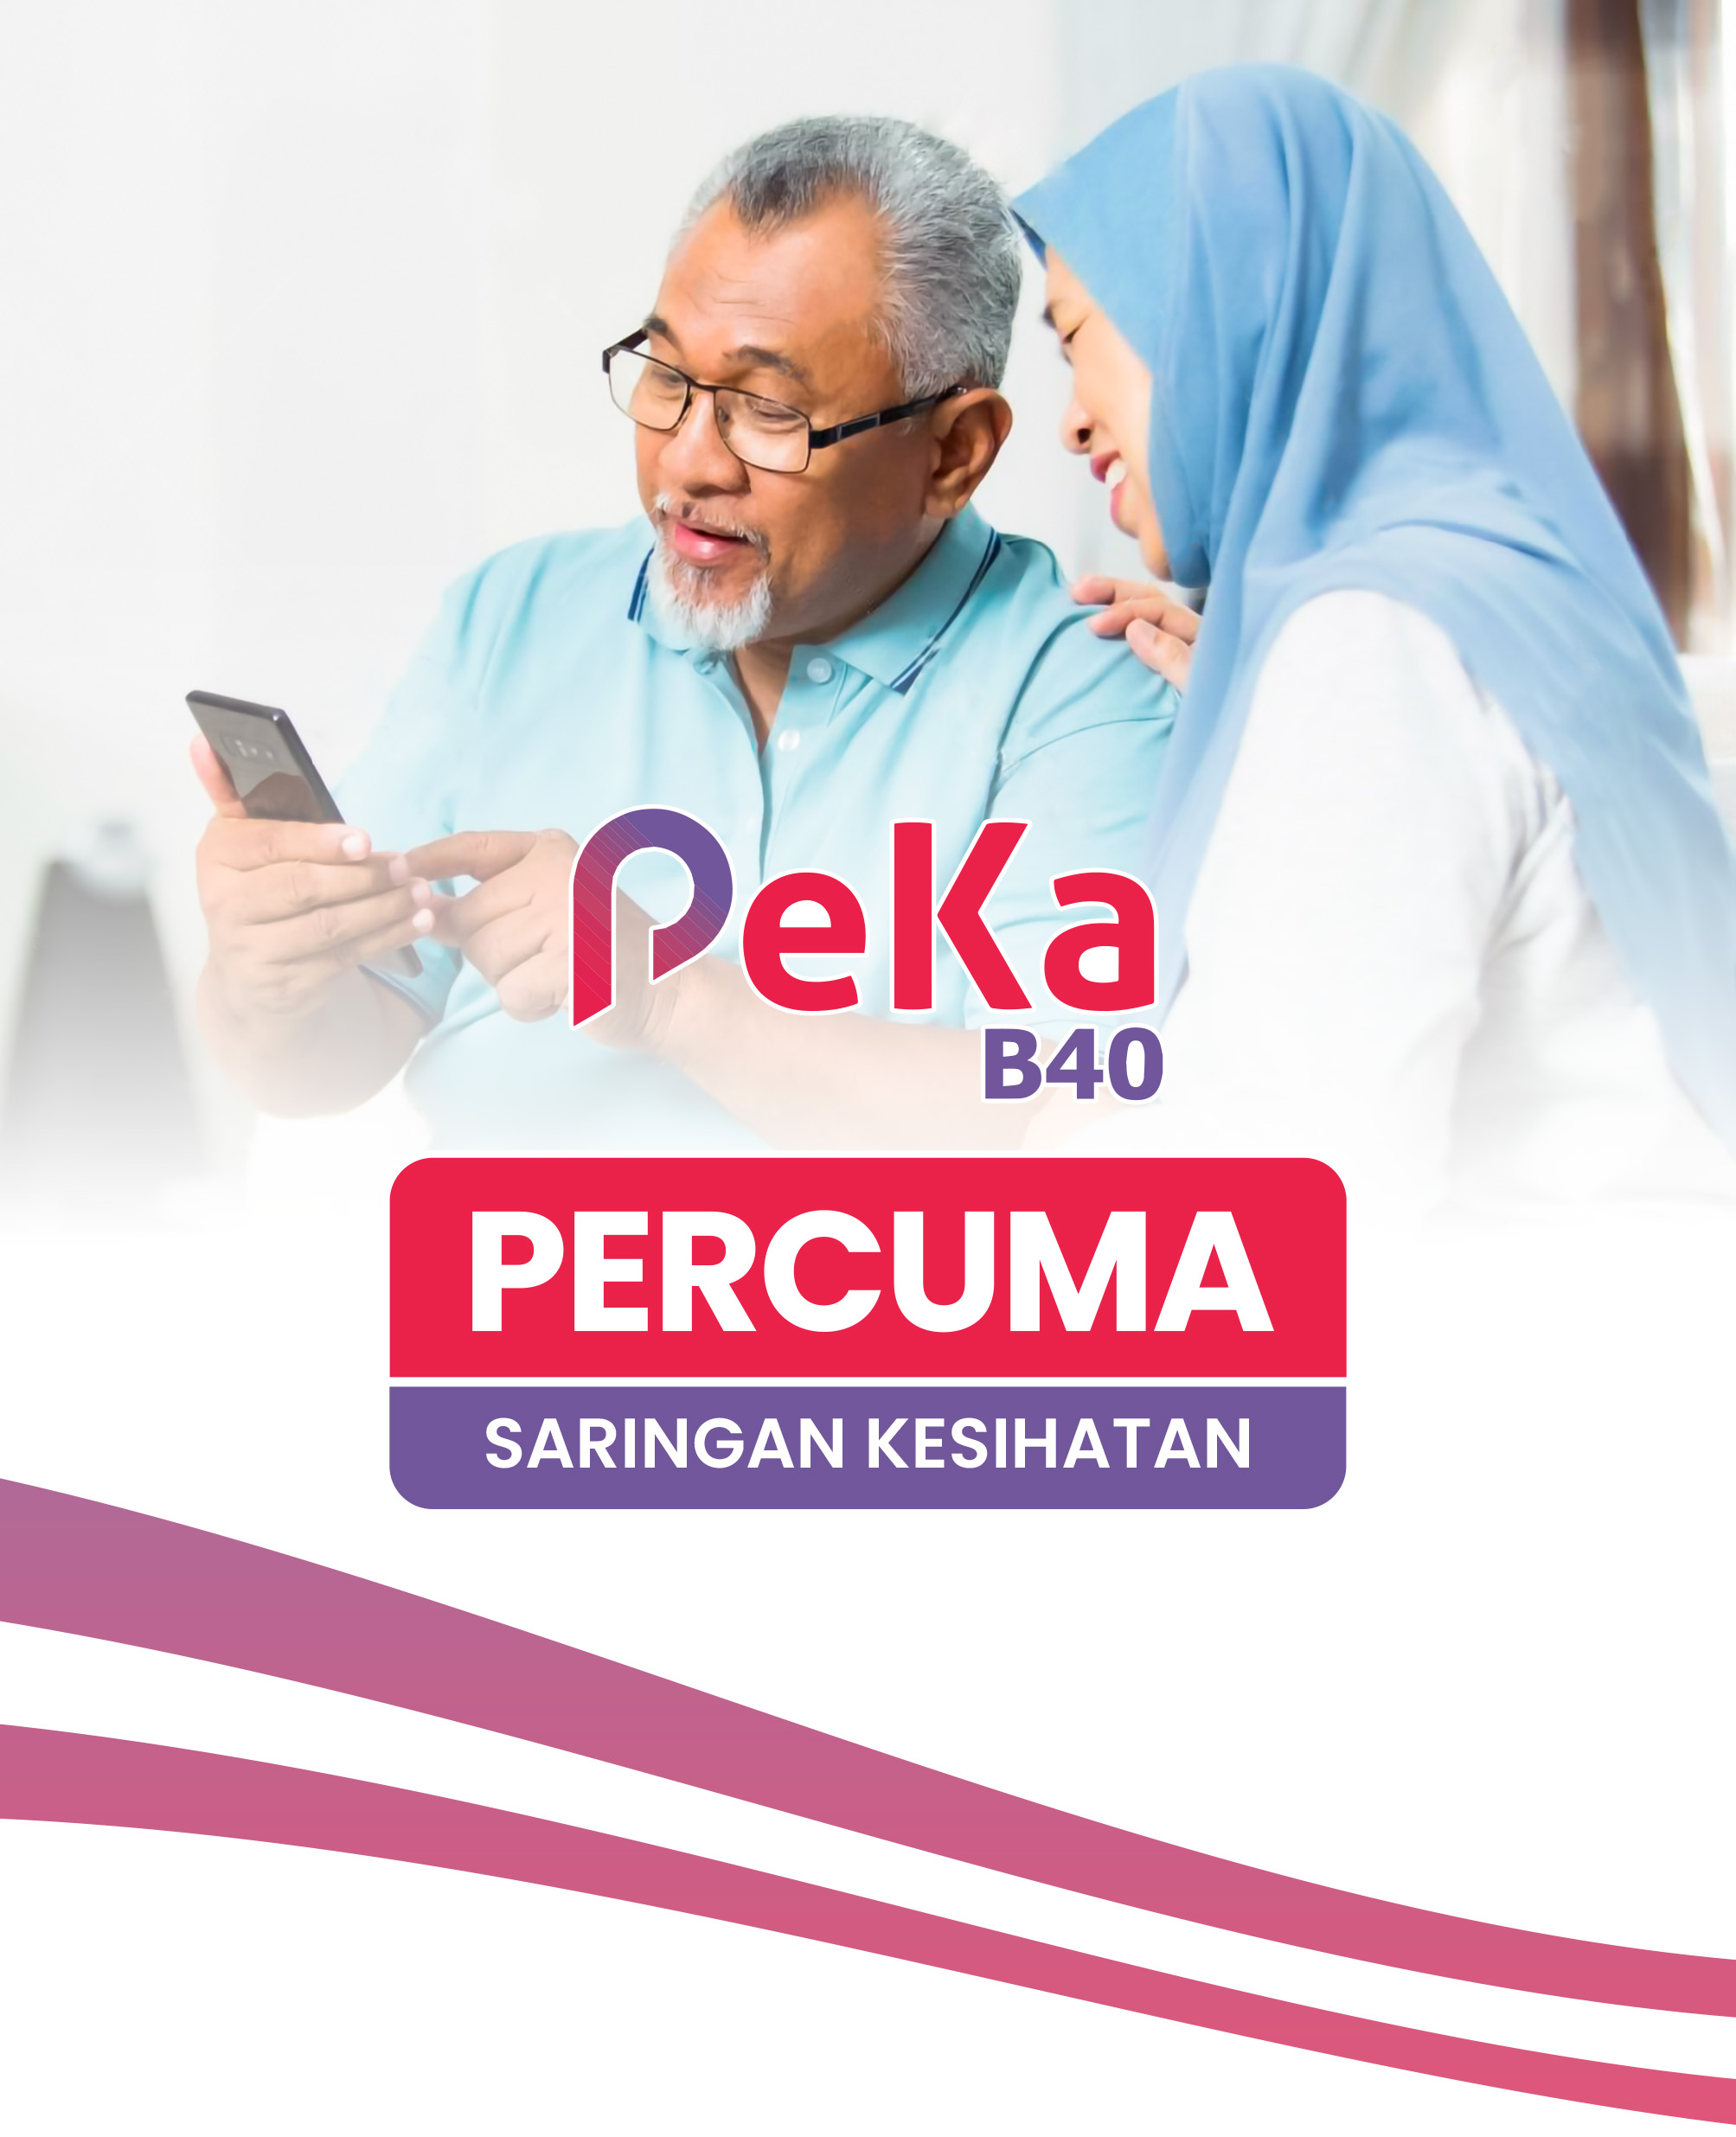 PEKA B40 Malaysia